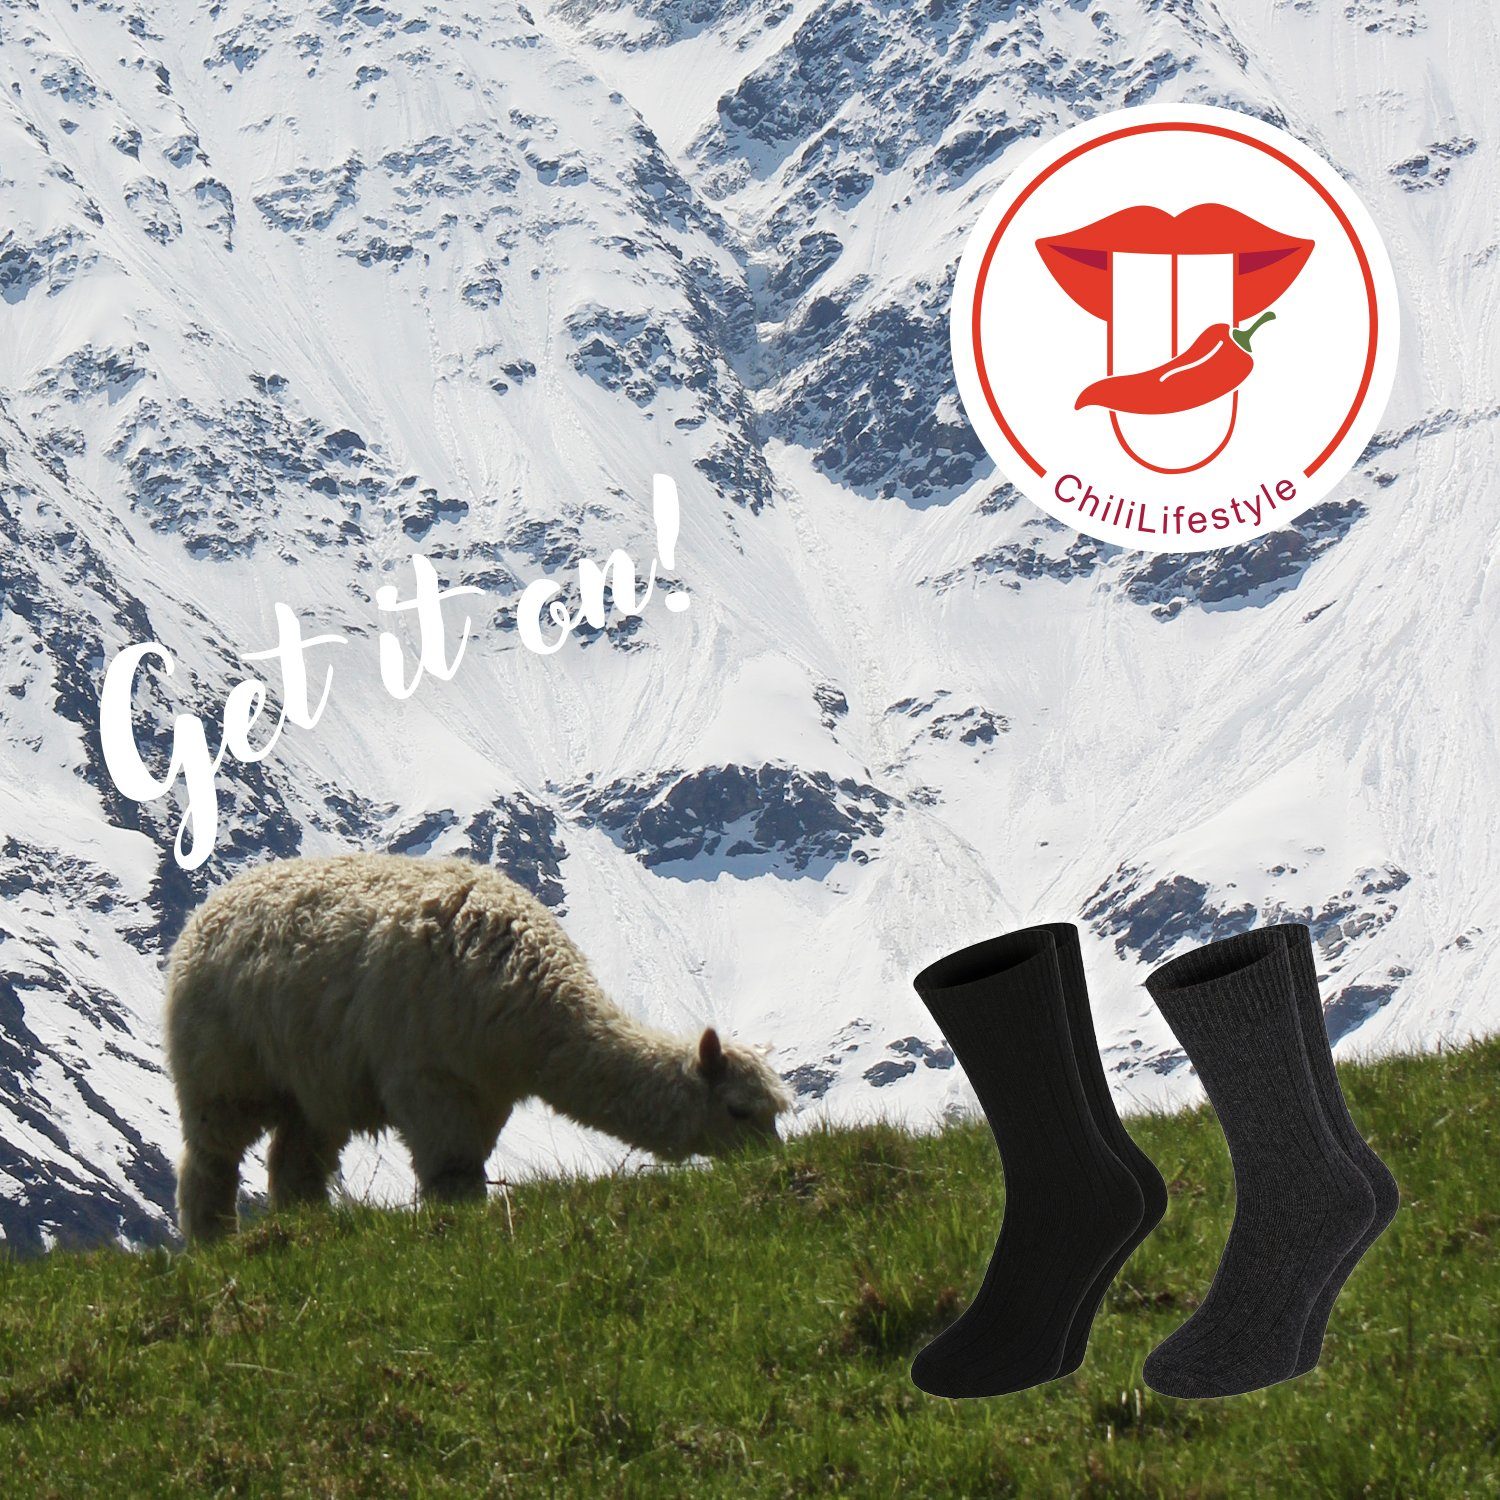 Lifestyle 4 Winter Warm Wolle Chili Alpaka Damen Soft Socken Paar Extra Strümpfe Super Herren